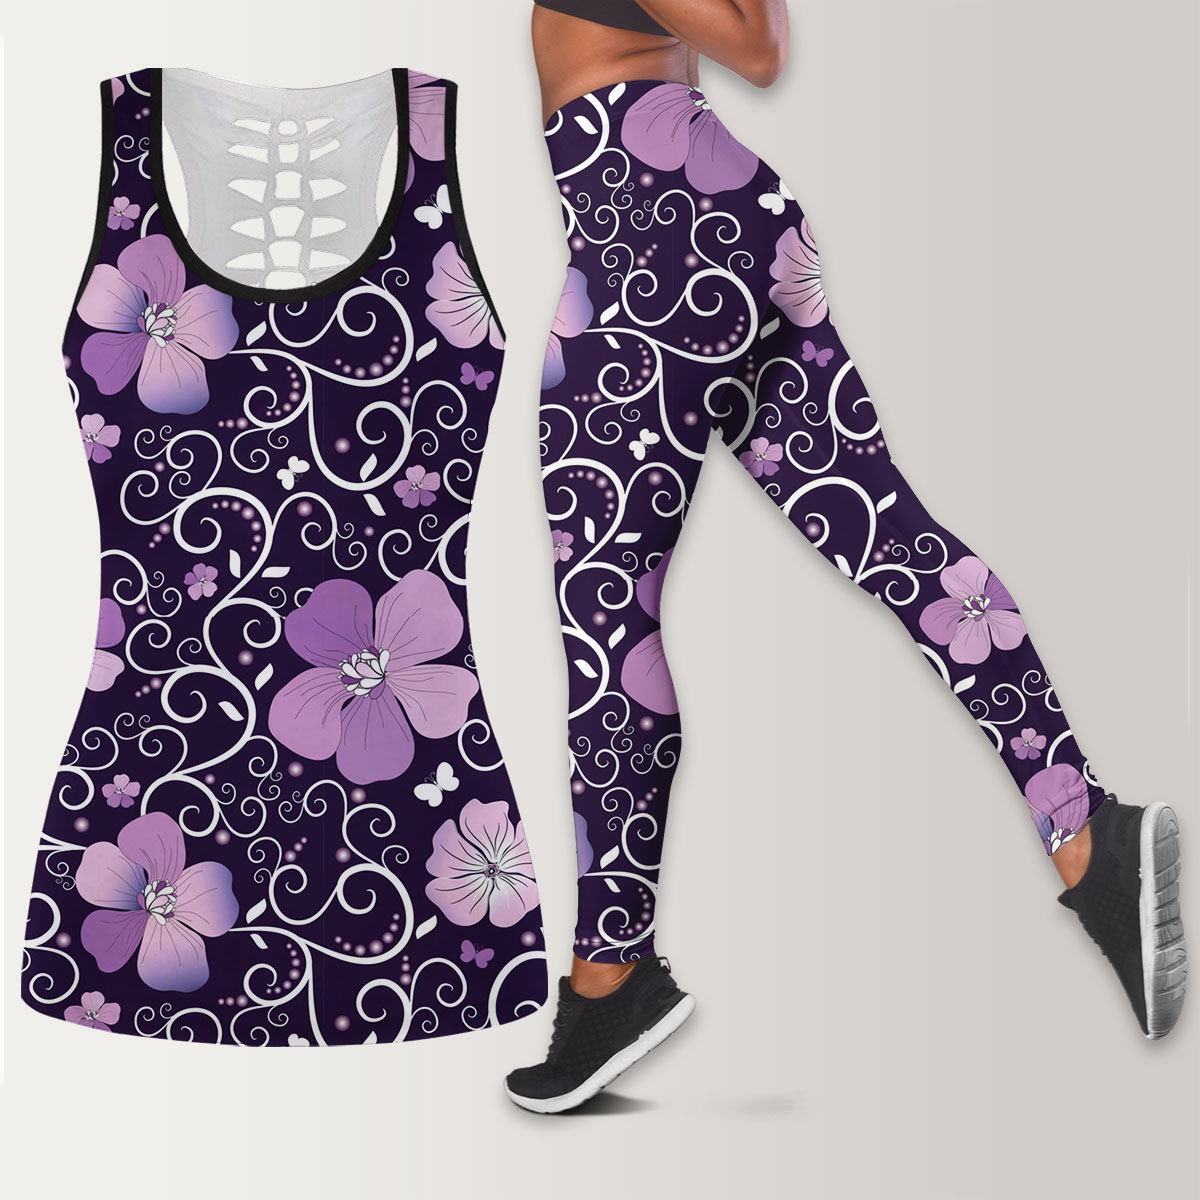 Dark Violet Floral Legging Tank Top set